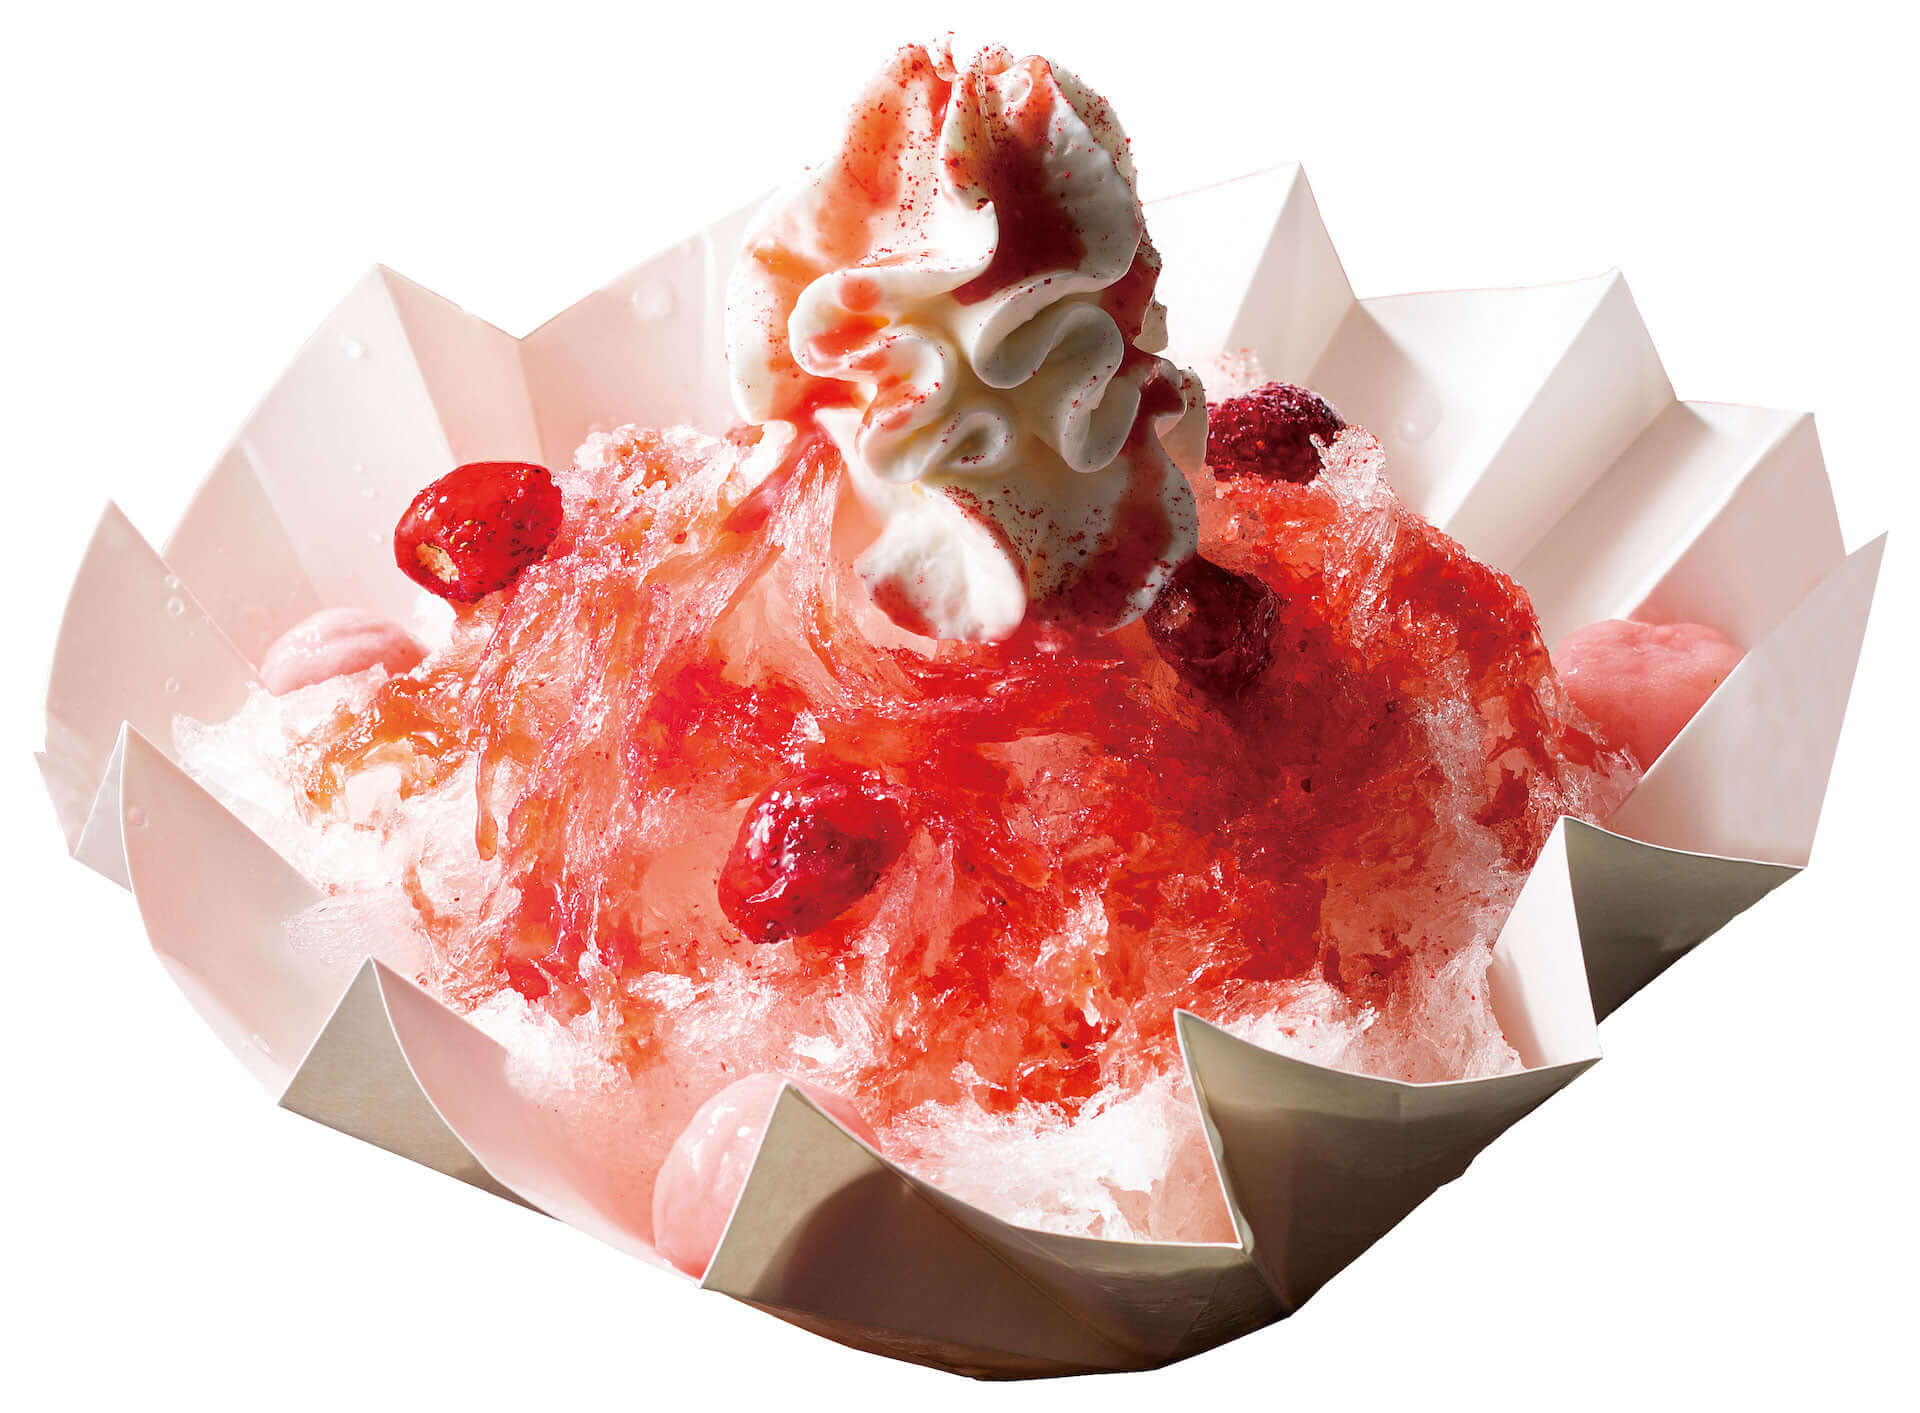 ヨックモック青山店に日本に7軒しかない氷職人の氷を使ったかき氷が登場！「苺」と「抹茶小豆」の2種類 gourmet190620yokumoku-kakigori_3-1920x1413